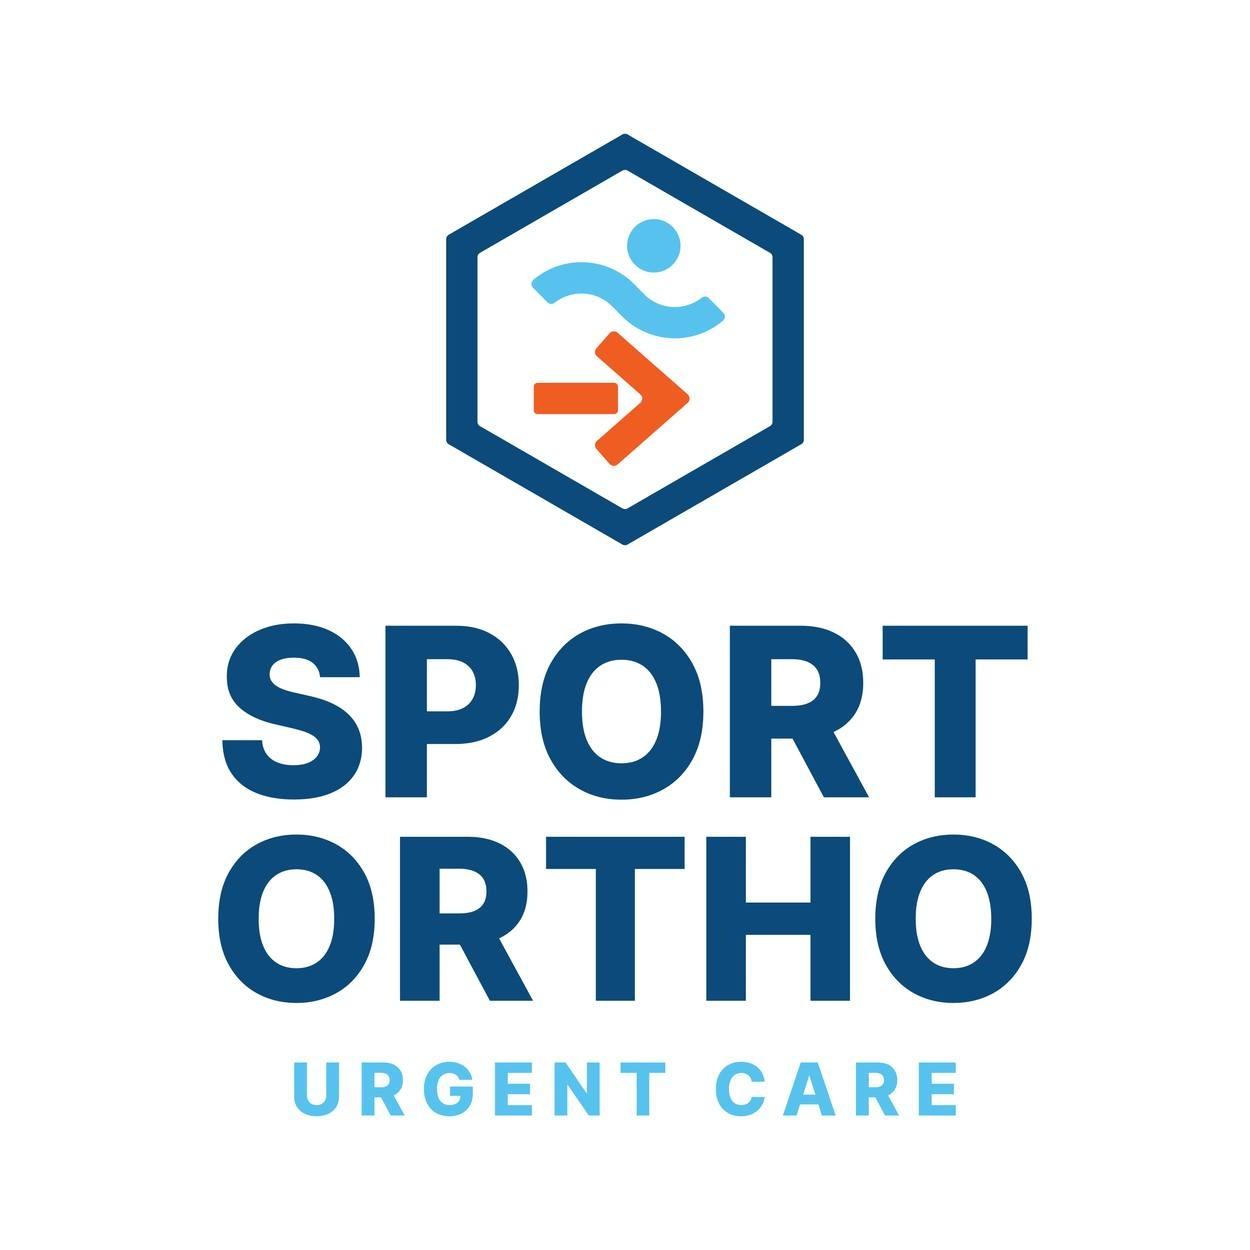 Sport Ortho Urgent Care - East Nashville - Nashville, TN 37206 - (615)258-8273 | ShowMeLocal.com